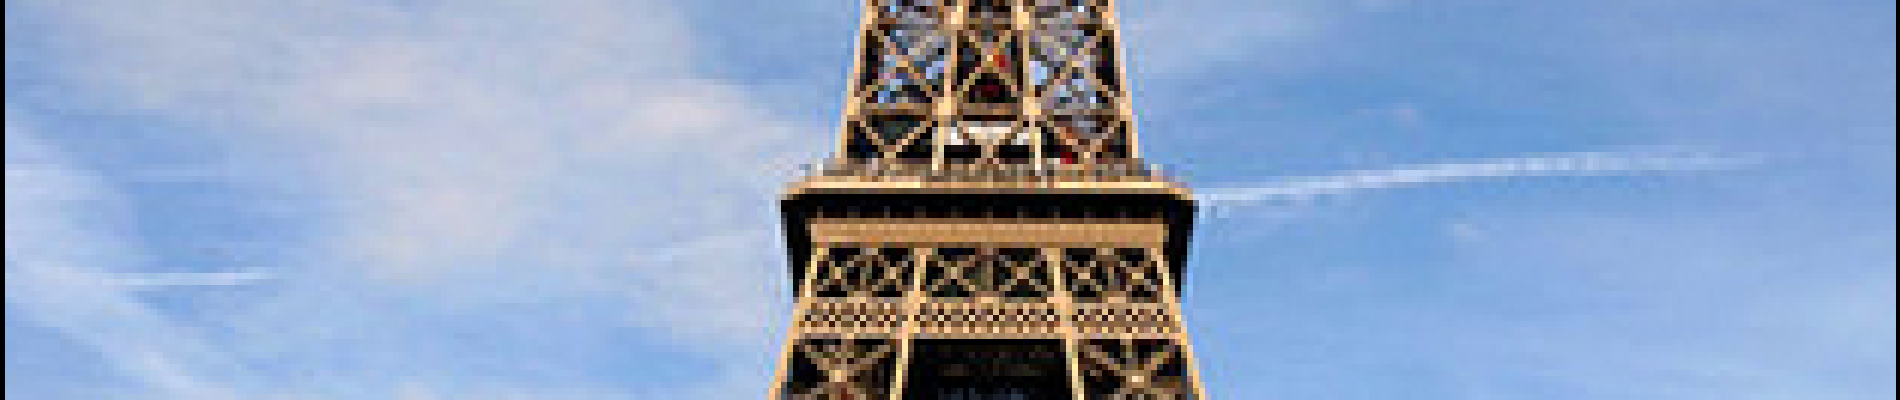 POI Parijs - Tour Eiffel - Photo